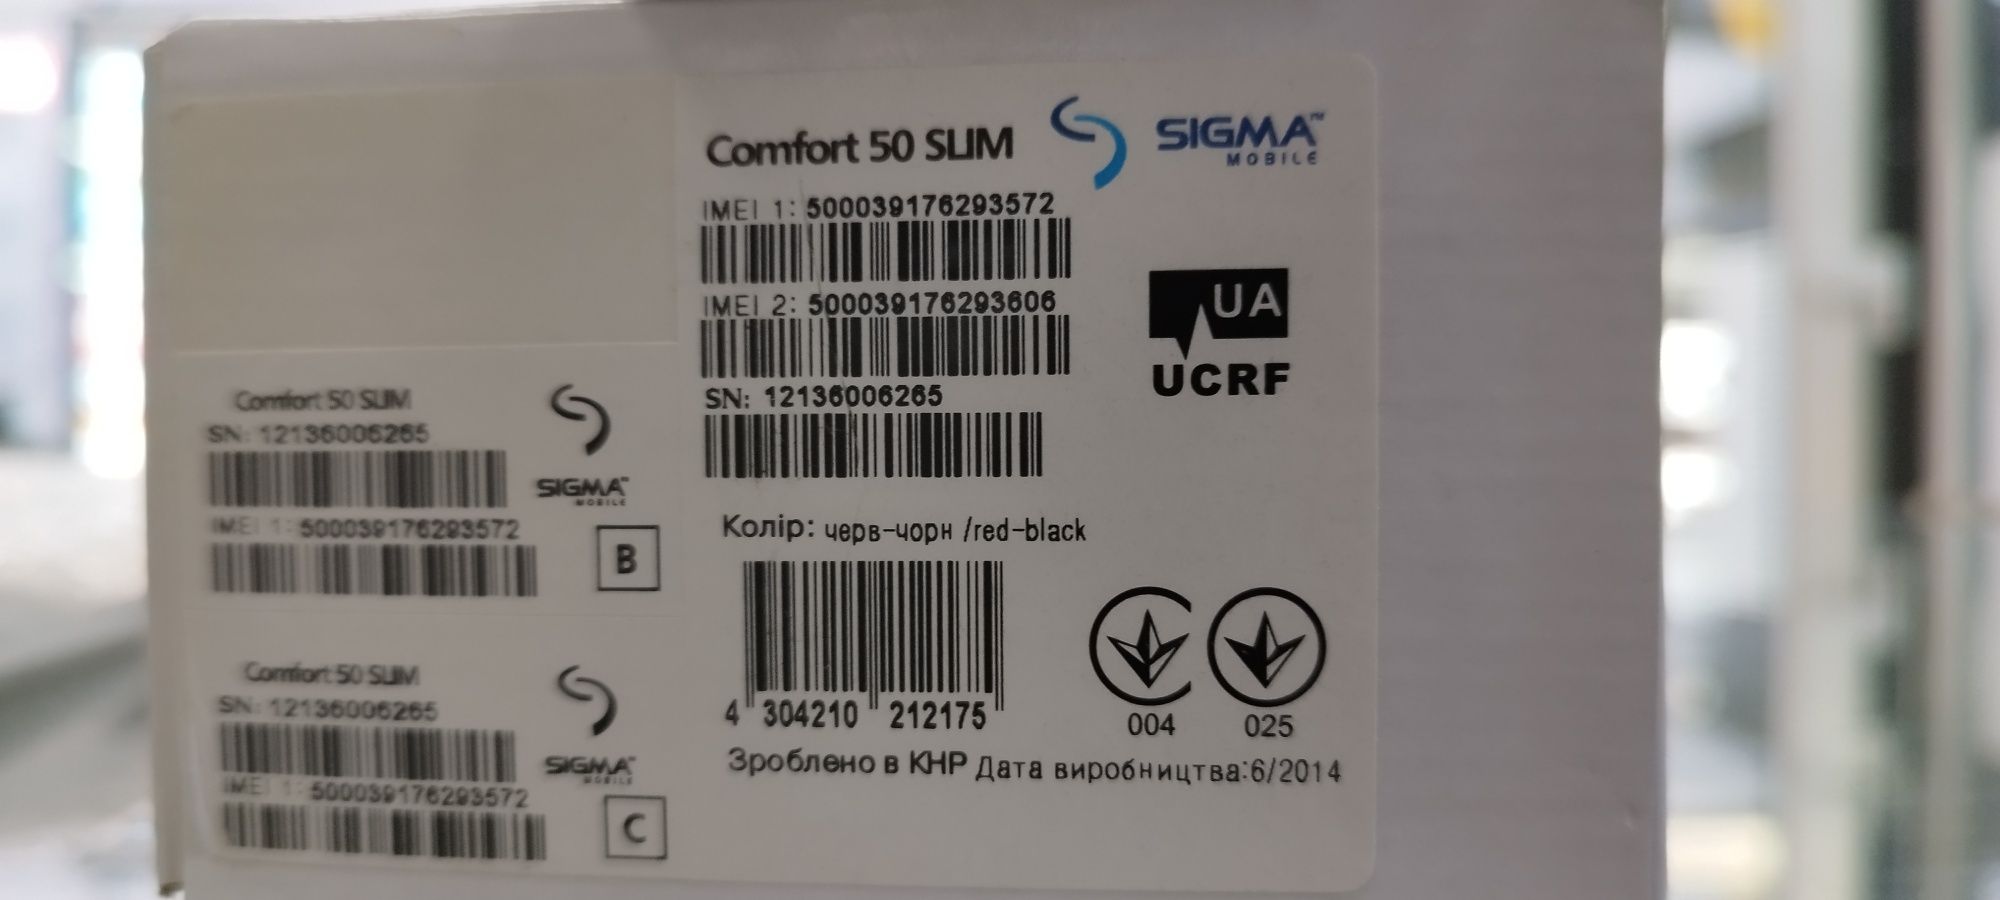 Sigma comfort 50 slim радио два фонарика